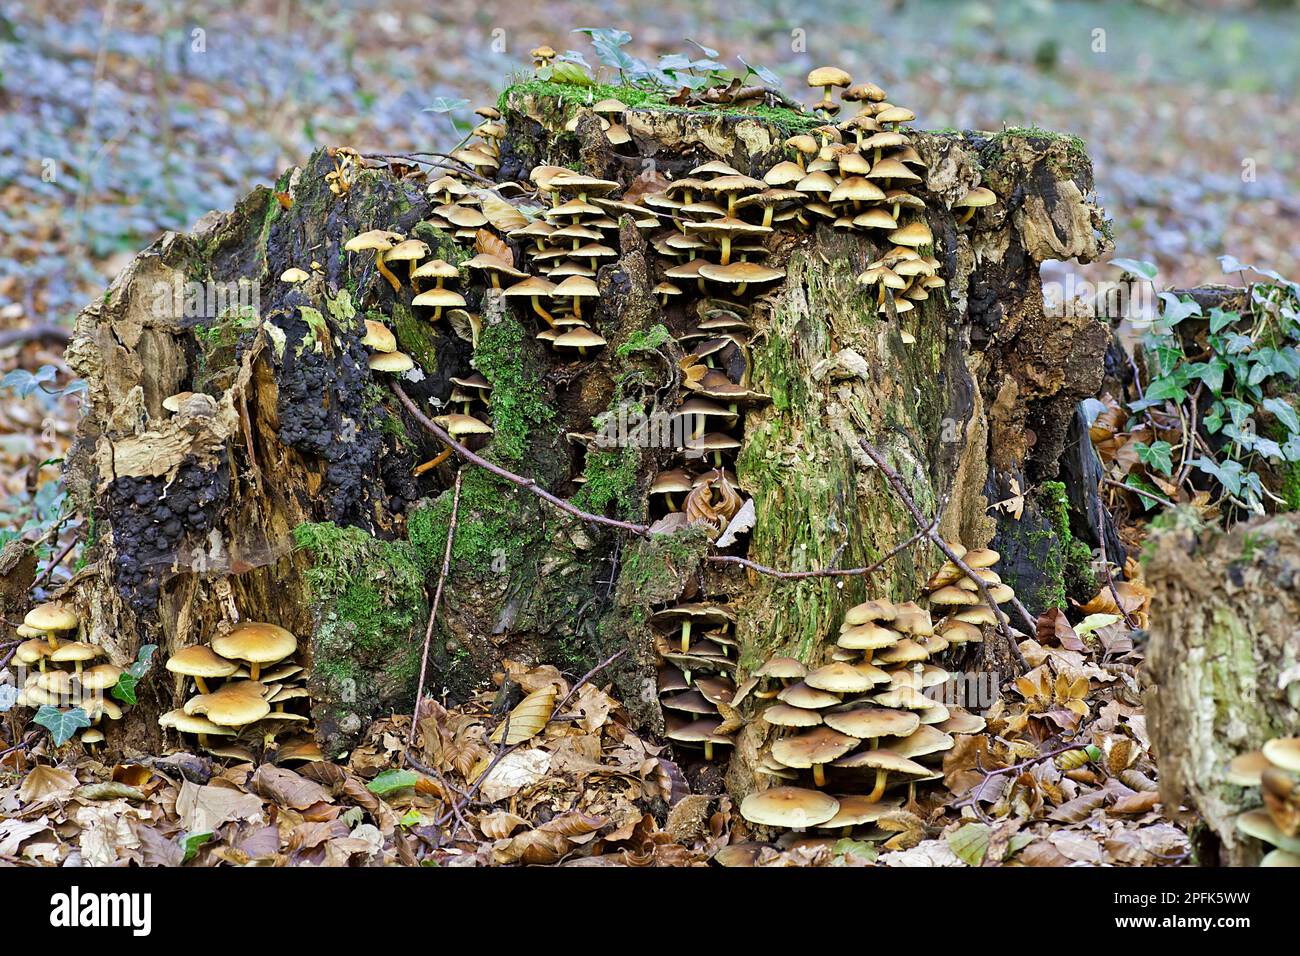 Le champignon du miel et du miel (Armillaria mellea), qui pousse sur la souche pourrie, le bois de Buckholt, Cotswolds, Gloucestershire, Angleterre, automne Banque D'Images